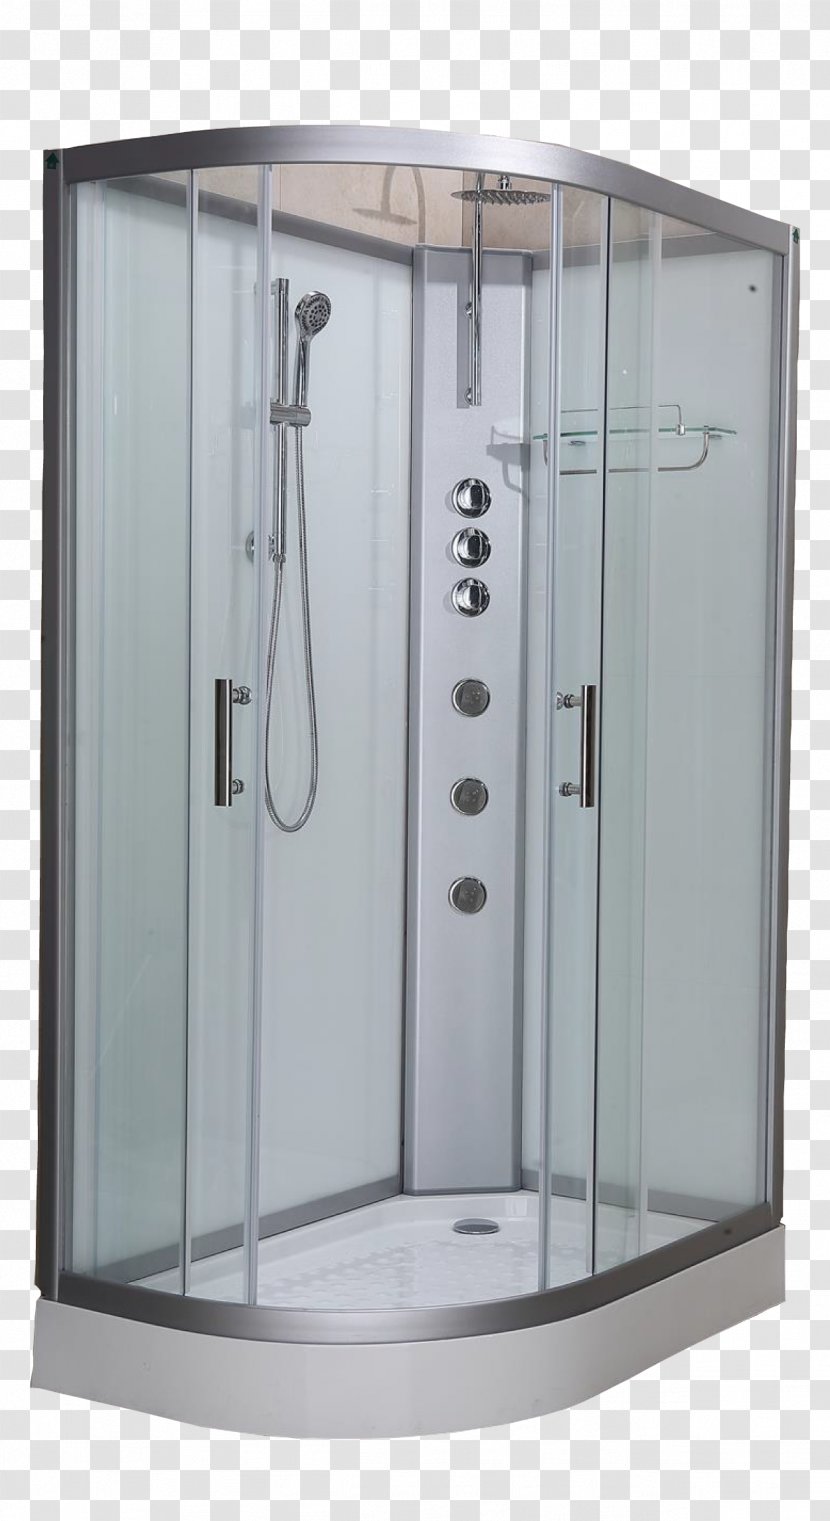 Steam Shower Towel Bathroom Sliding Door - Plumbing Fixture Transparent PNG